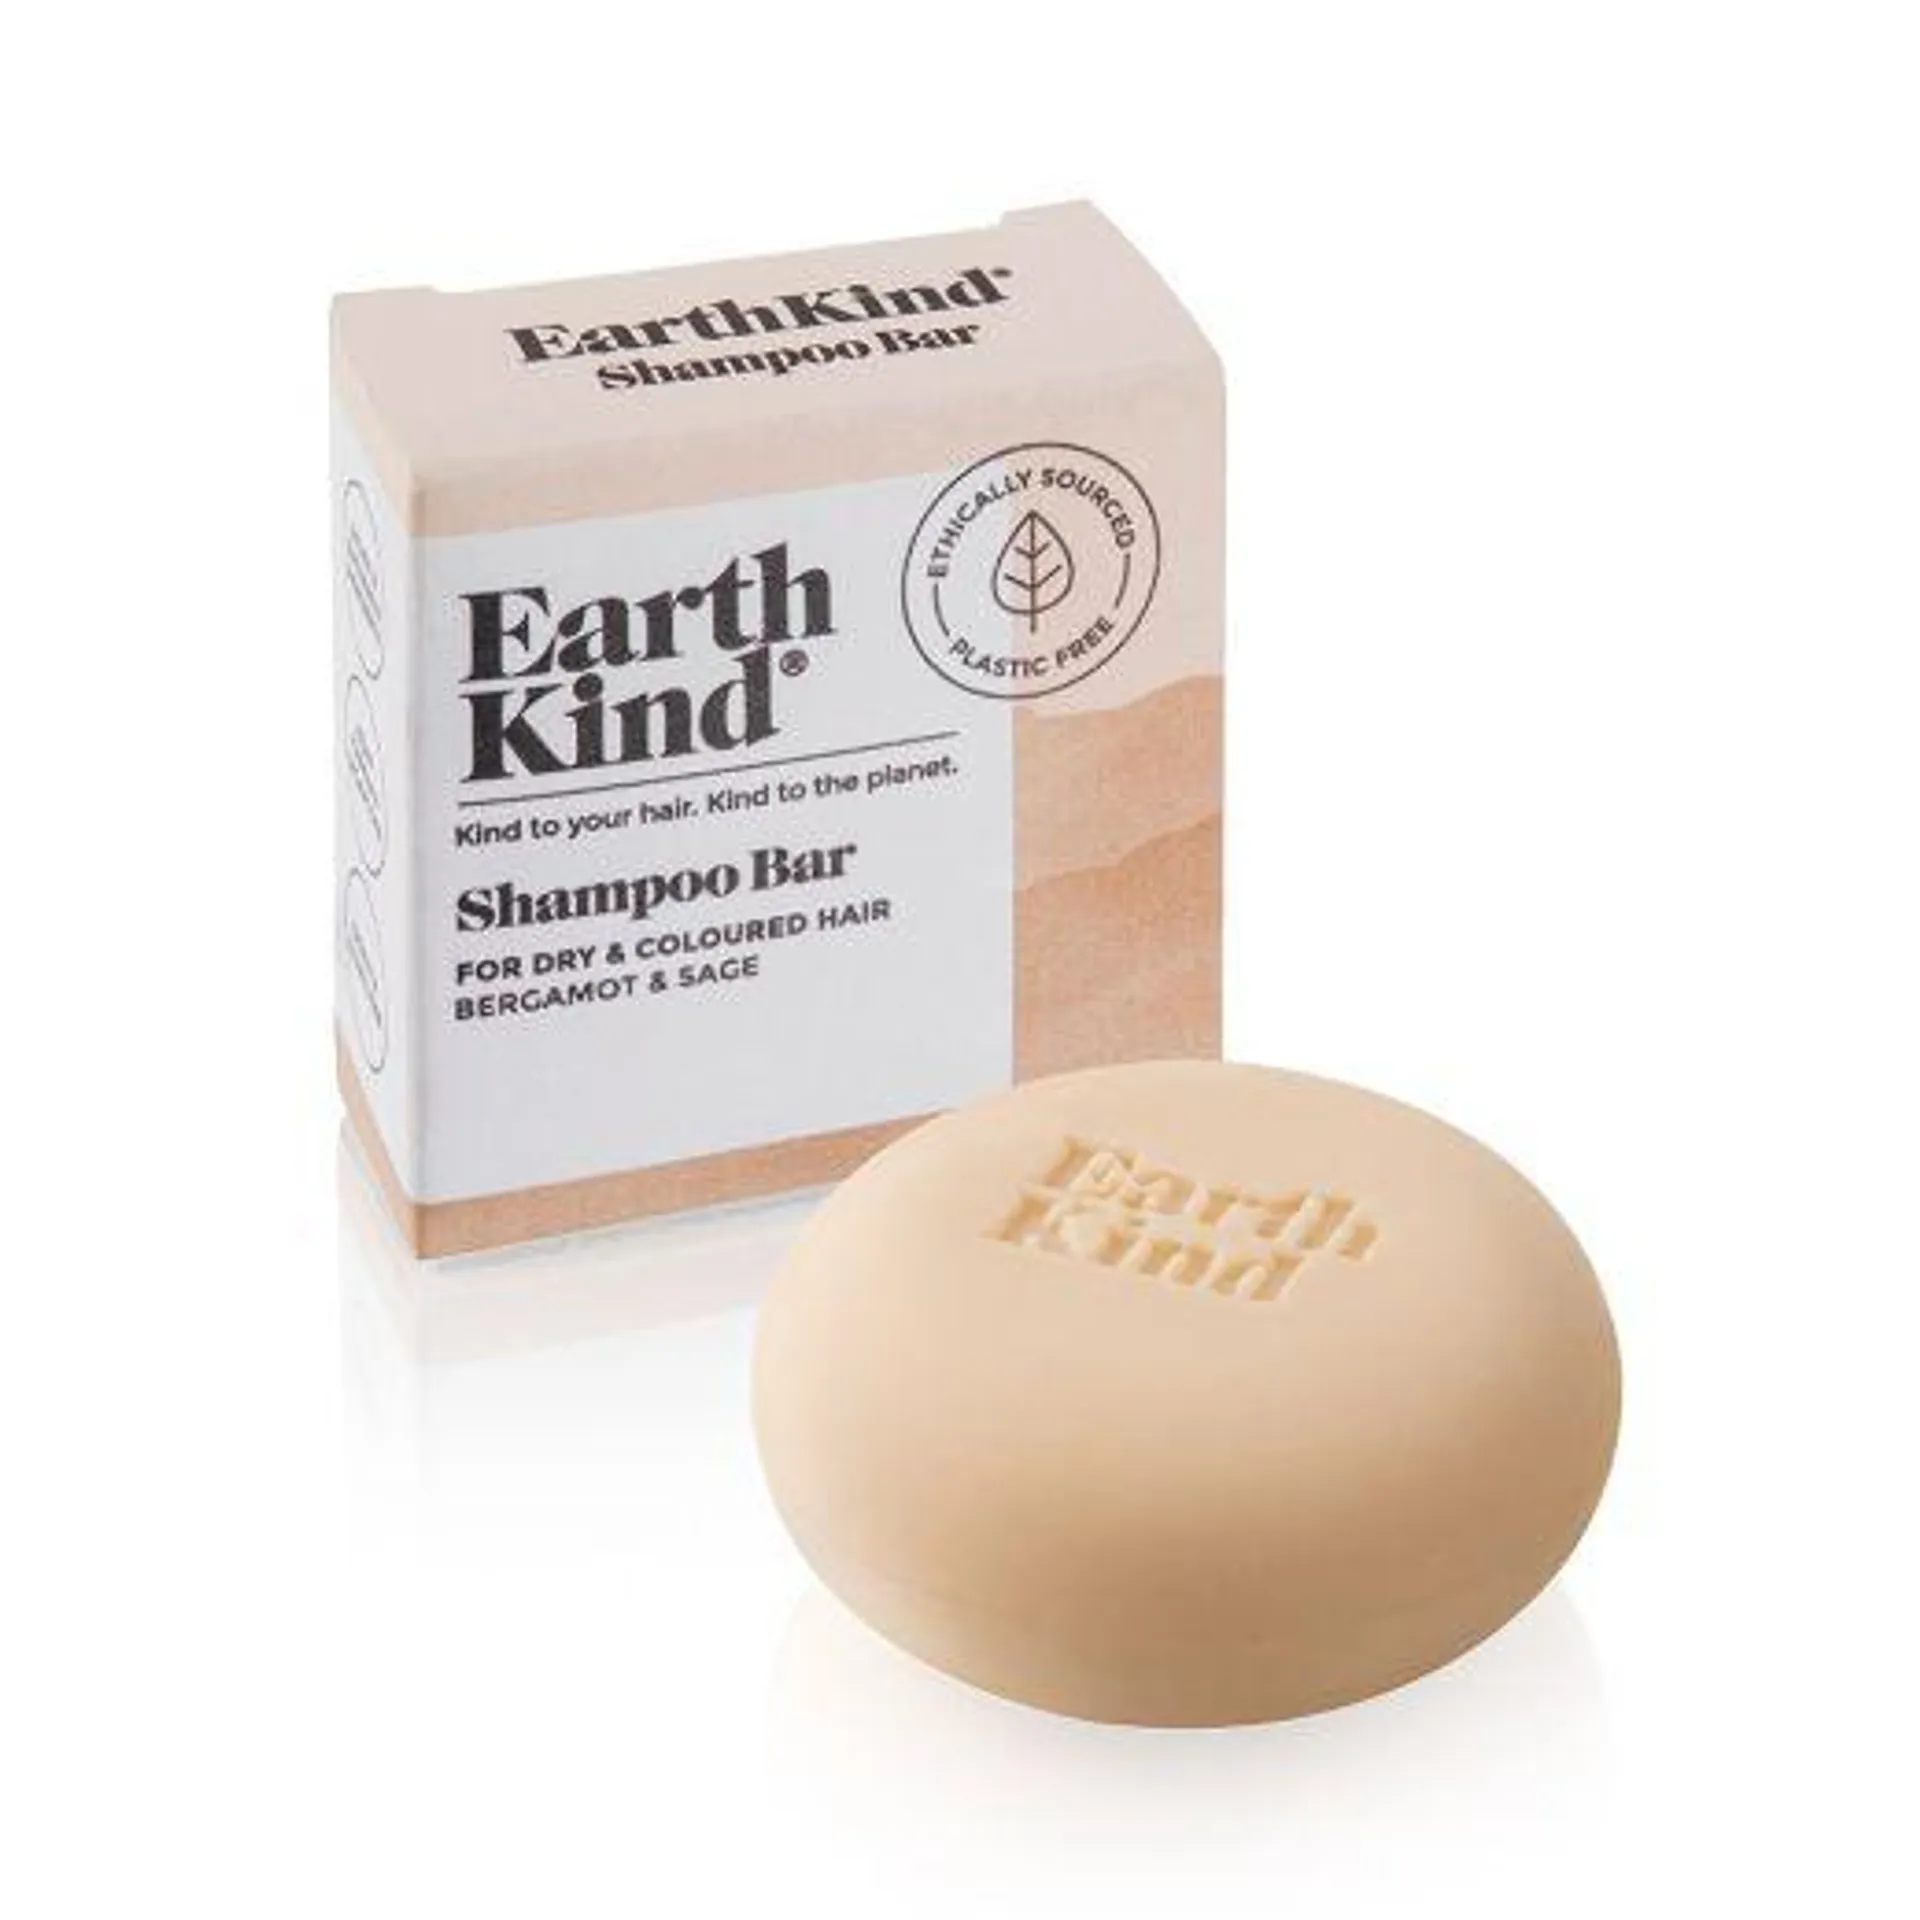 EarthKind Bergamot & Sage Shampoo Bar